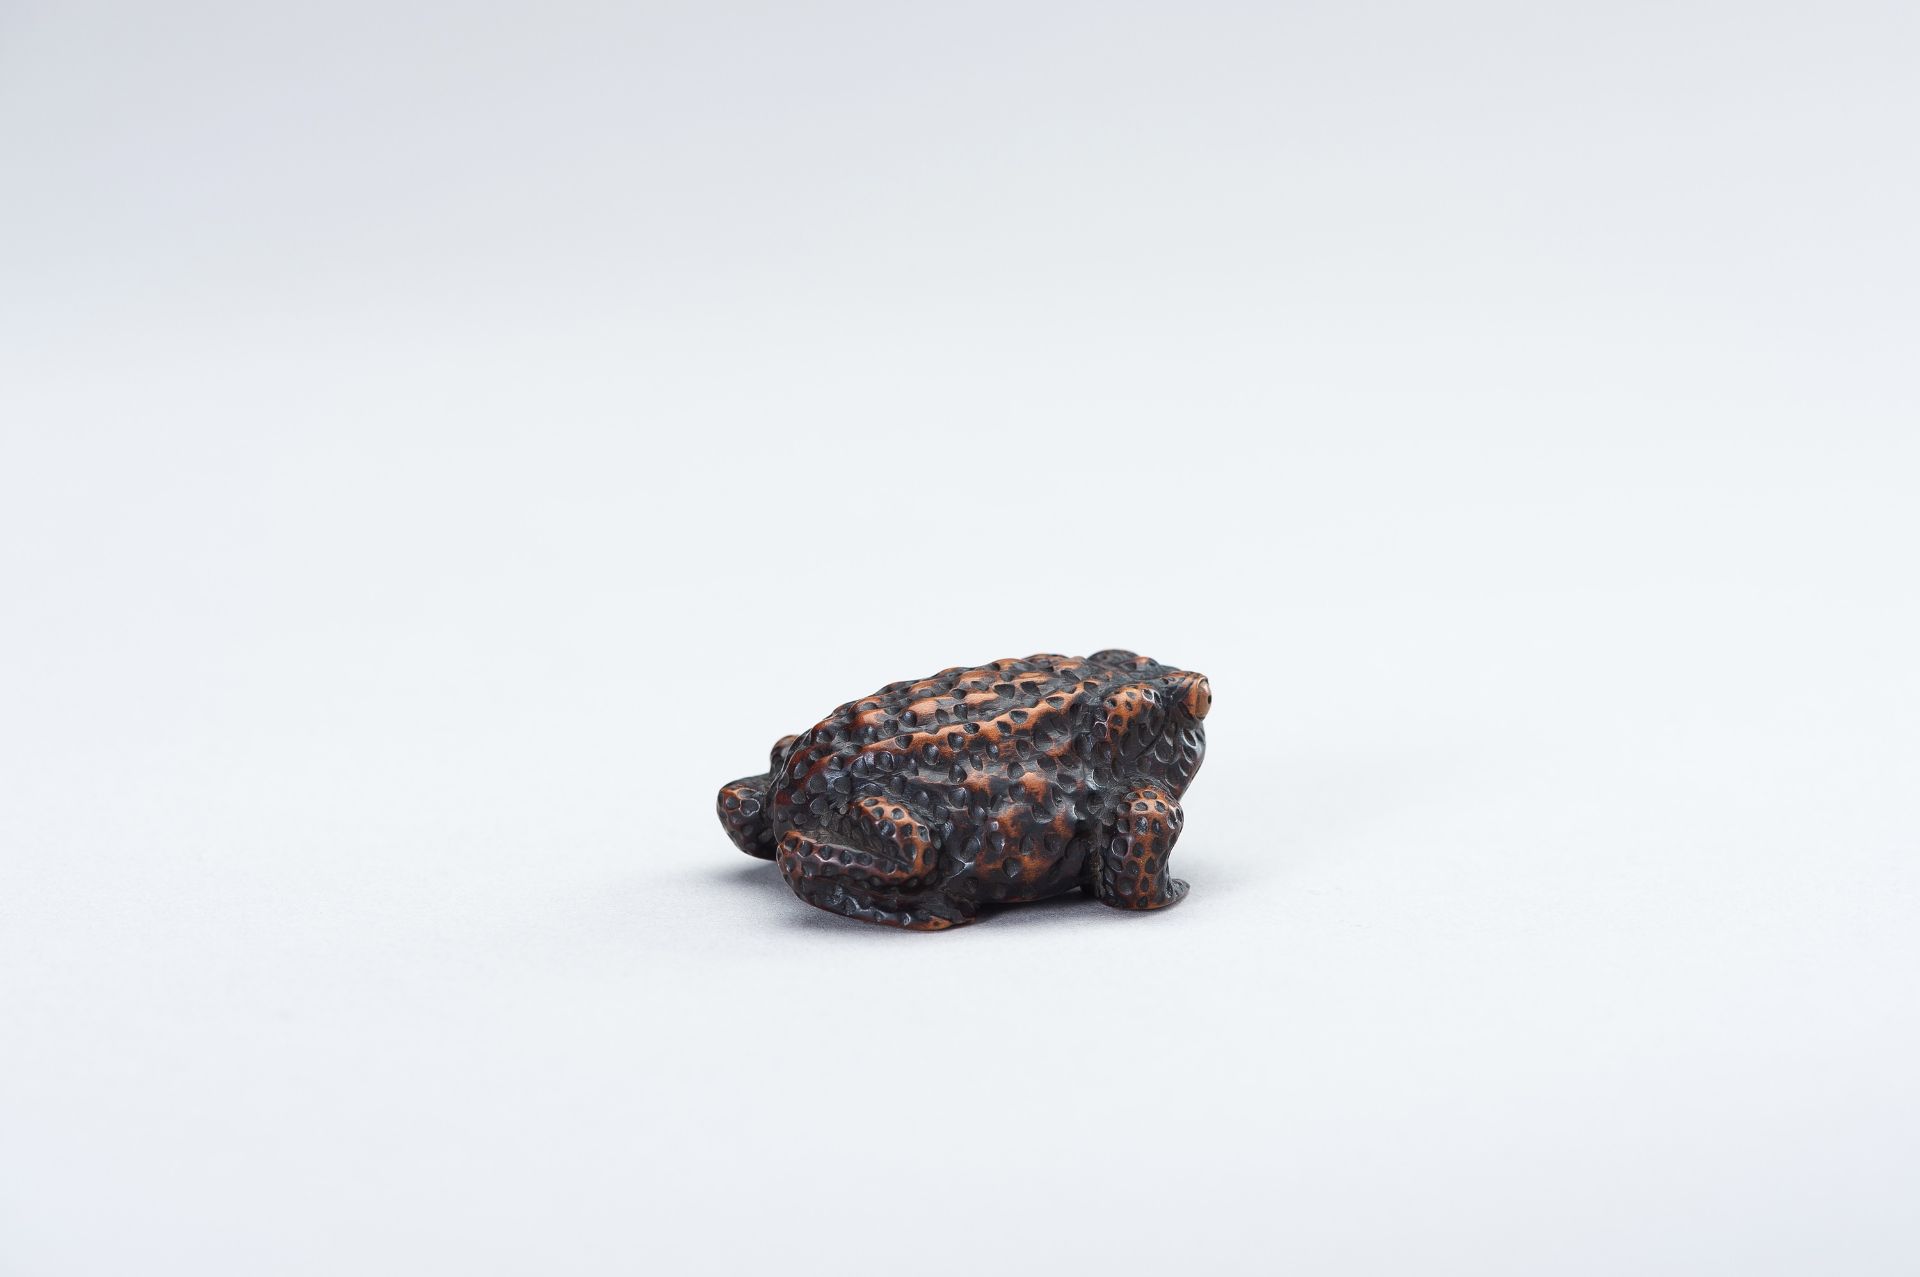 SHIGETADA: A WOOD NETSUKE OF A TOAD - Image 6 of 14